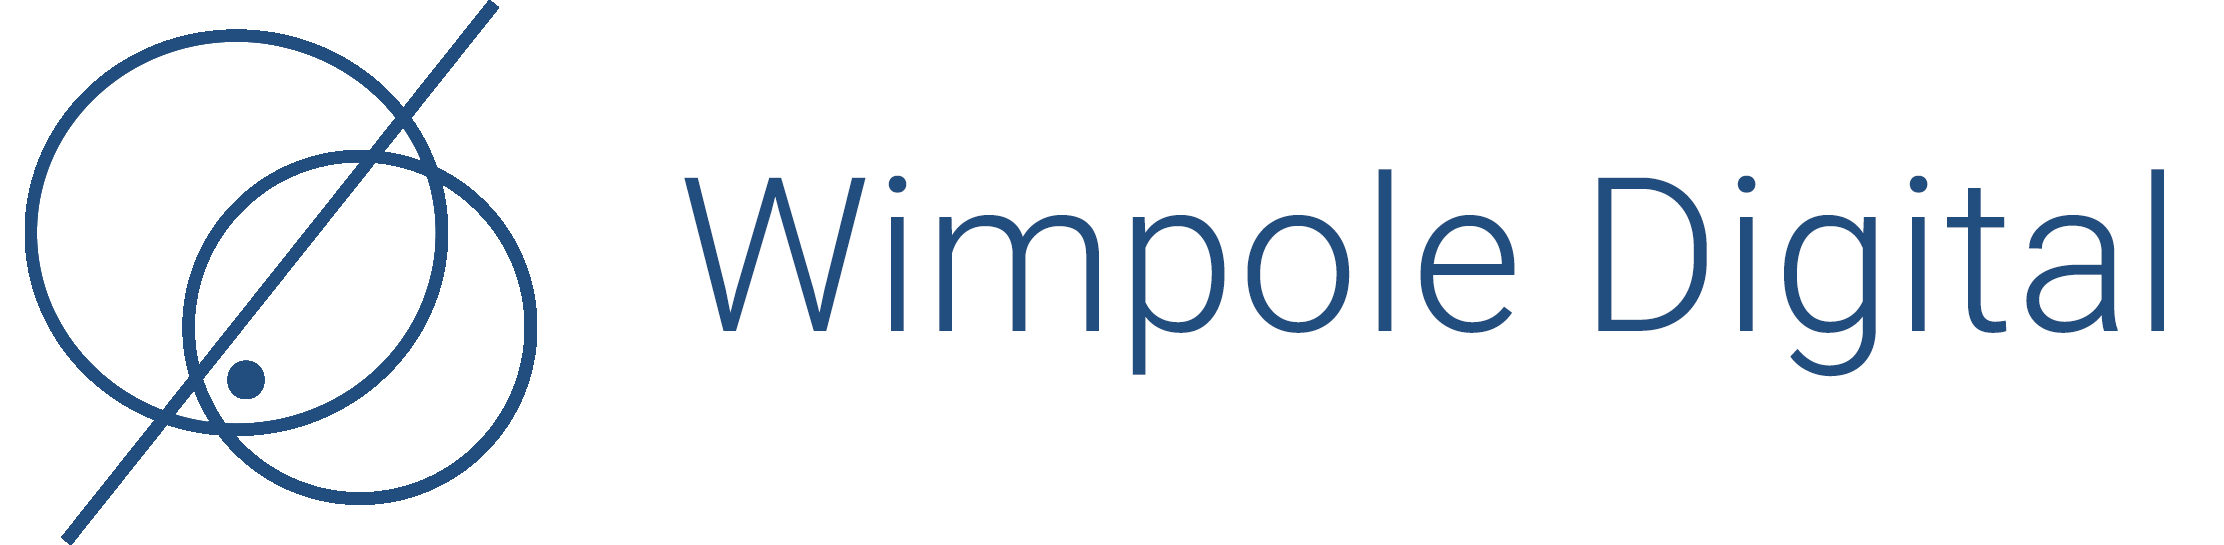 Wimpole Digital